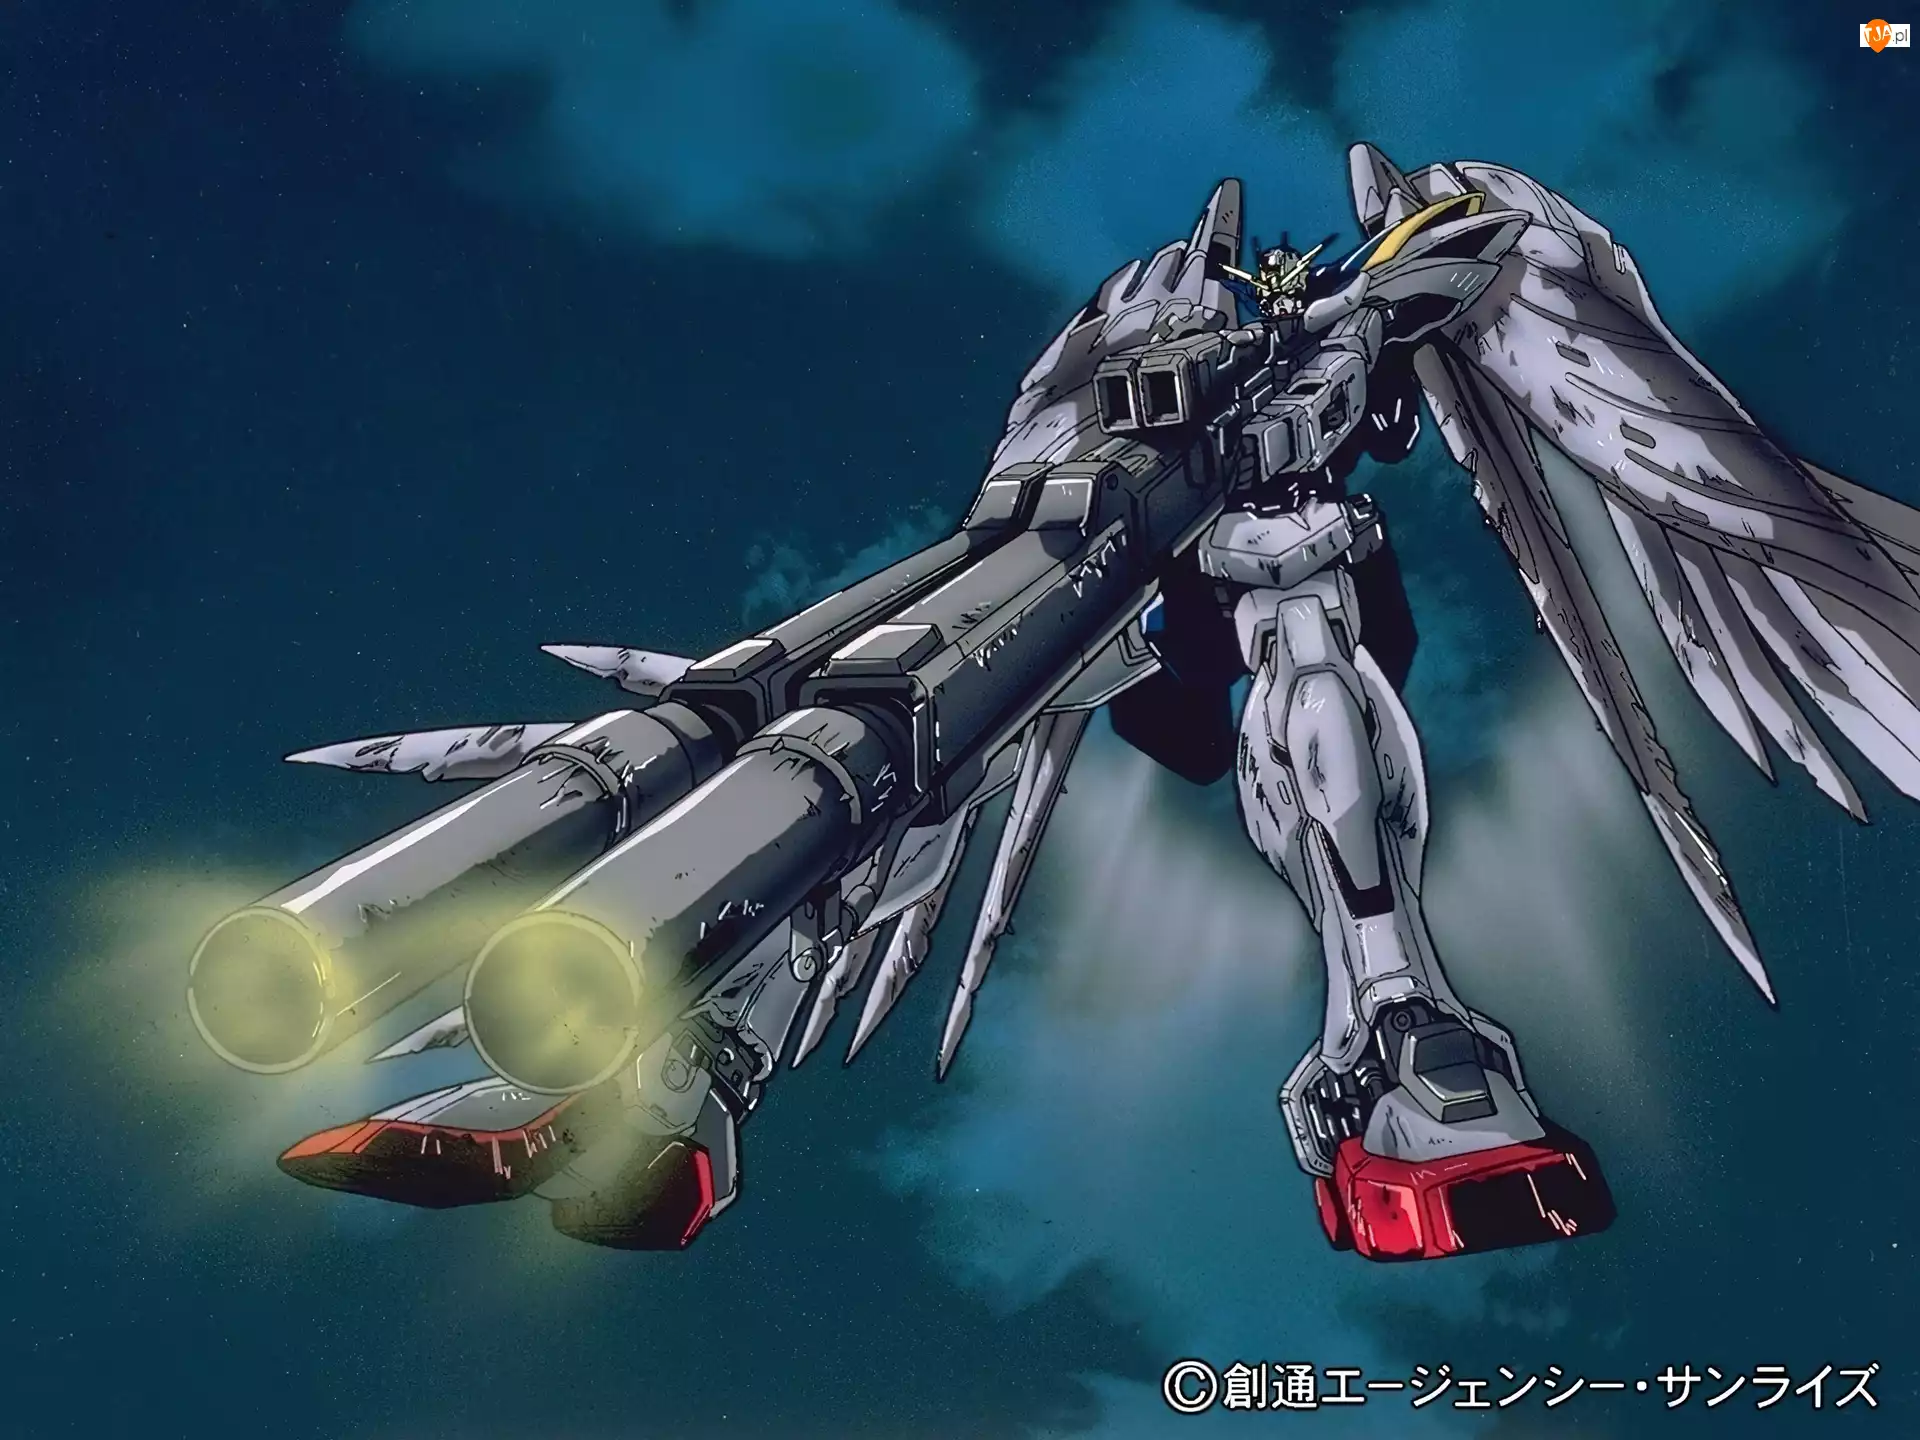 shotgun, Gundam Wing, robot, skrzydła